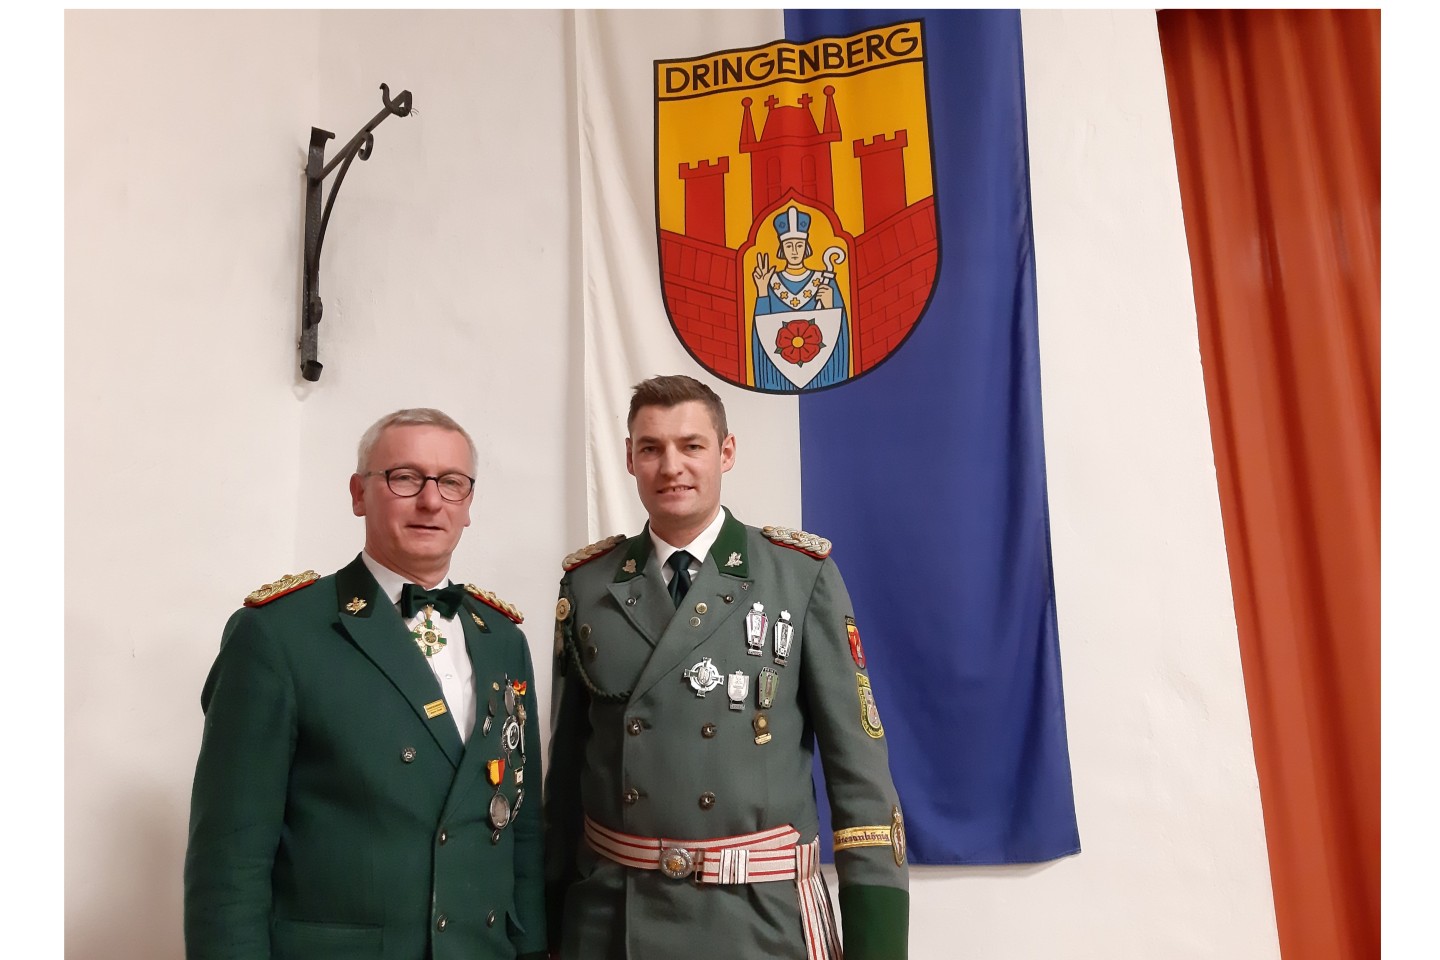 Königlicher Oberst der St. Sebastian Schützenbruderschaft Dringenberg e.V.